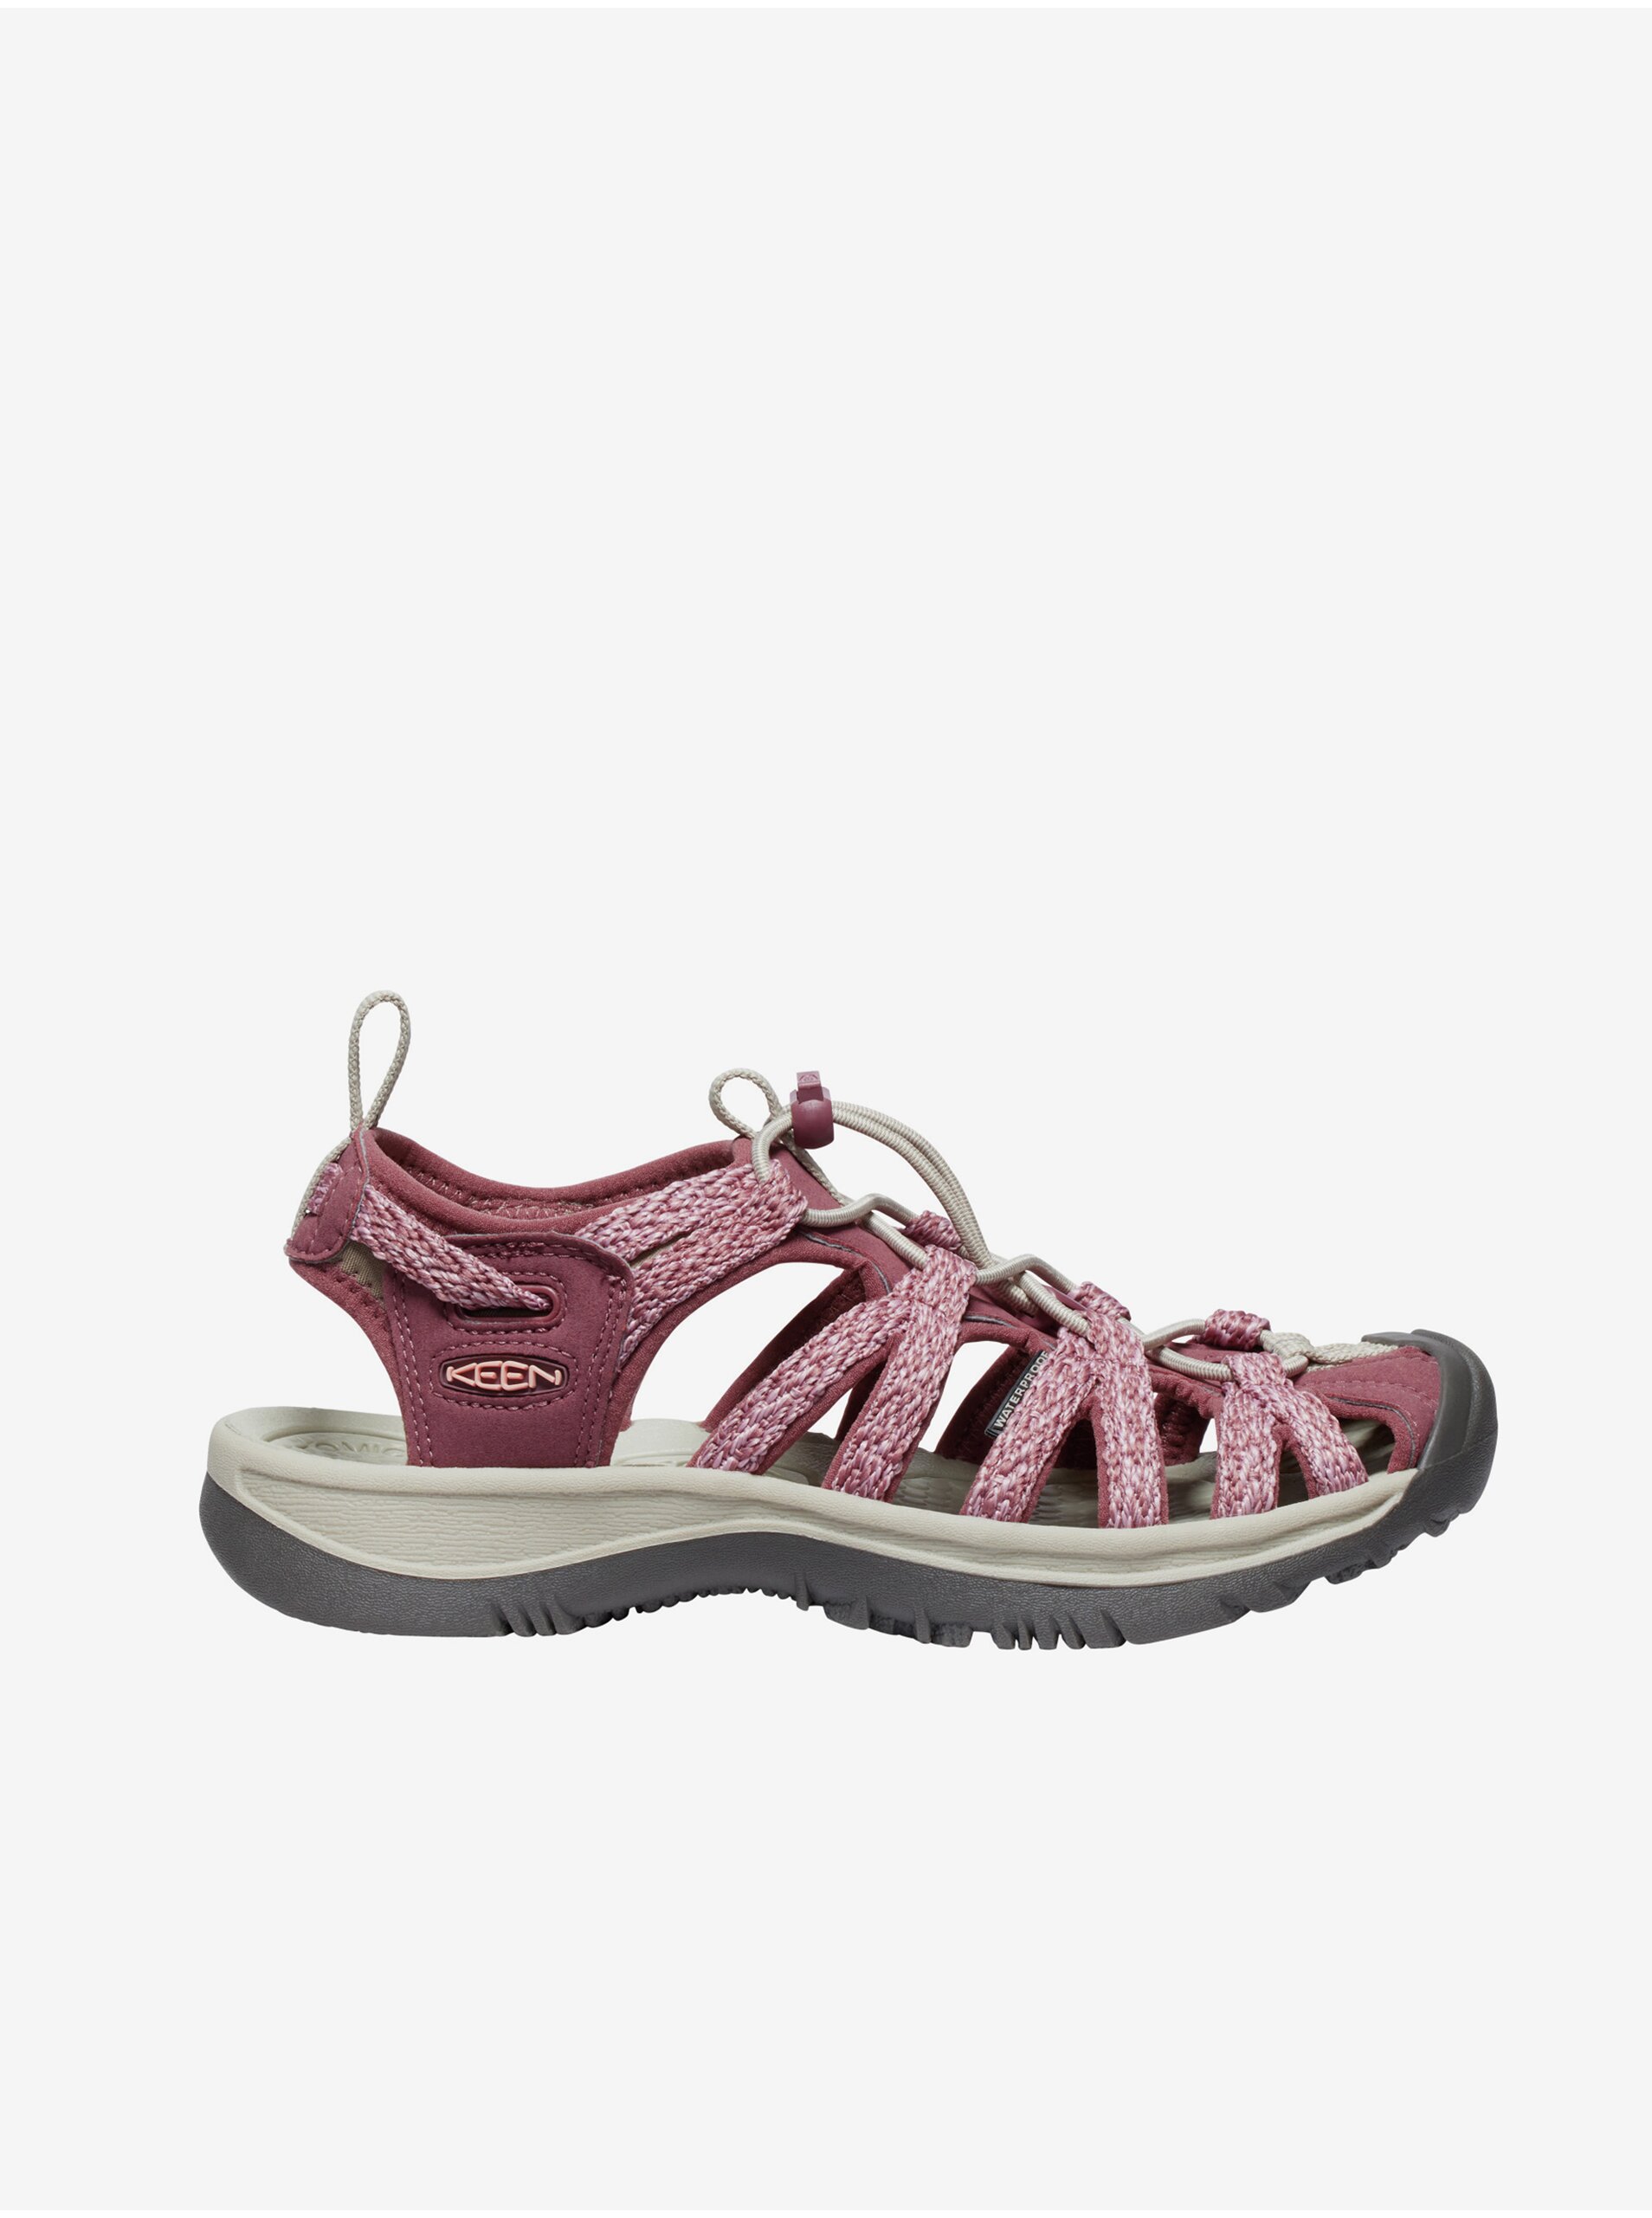 E-shop Ružové dámske kožené outdoorové sandále Keen Whisper